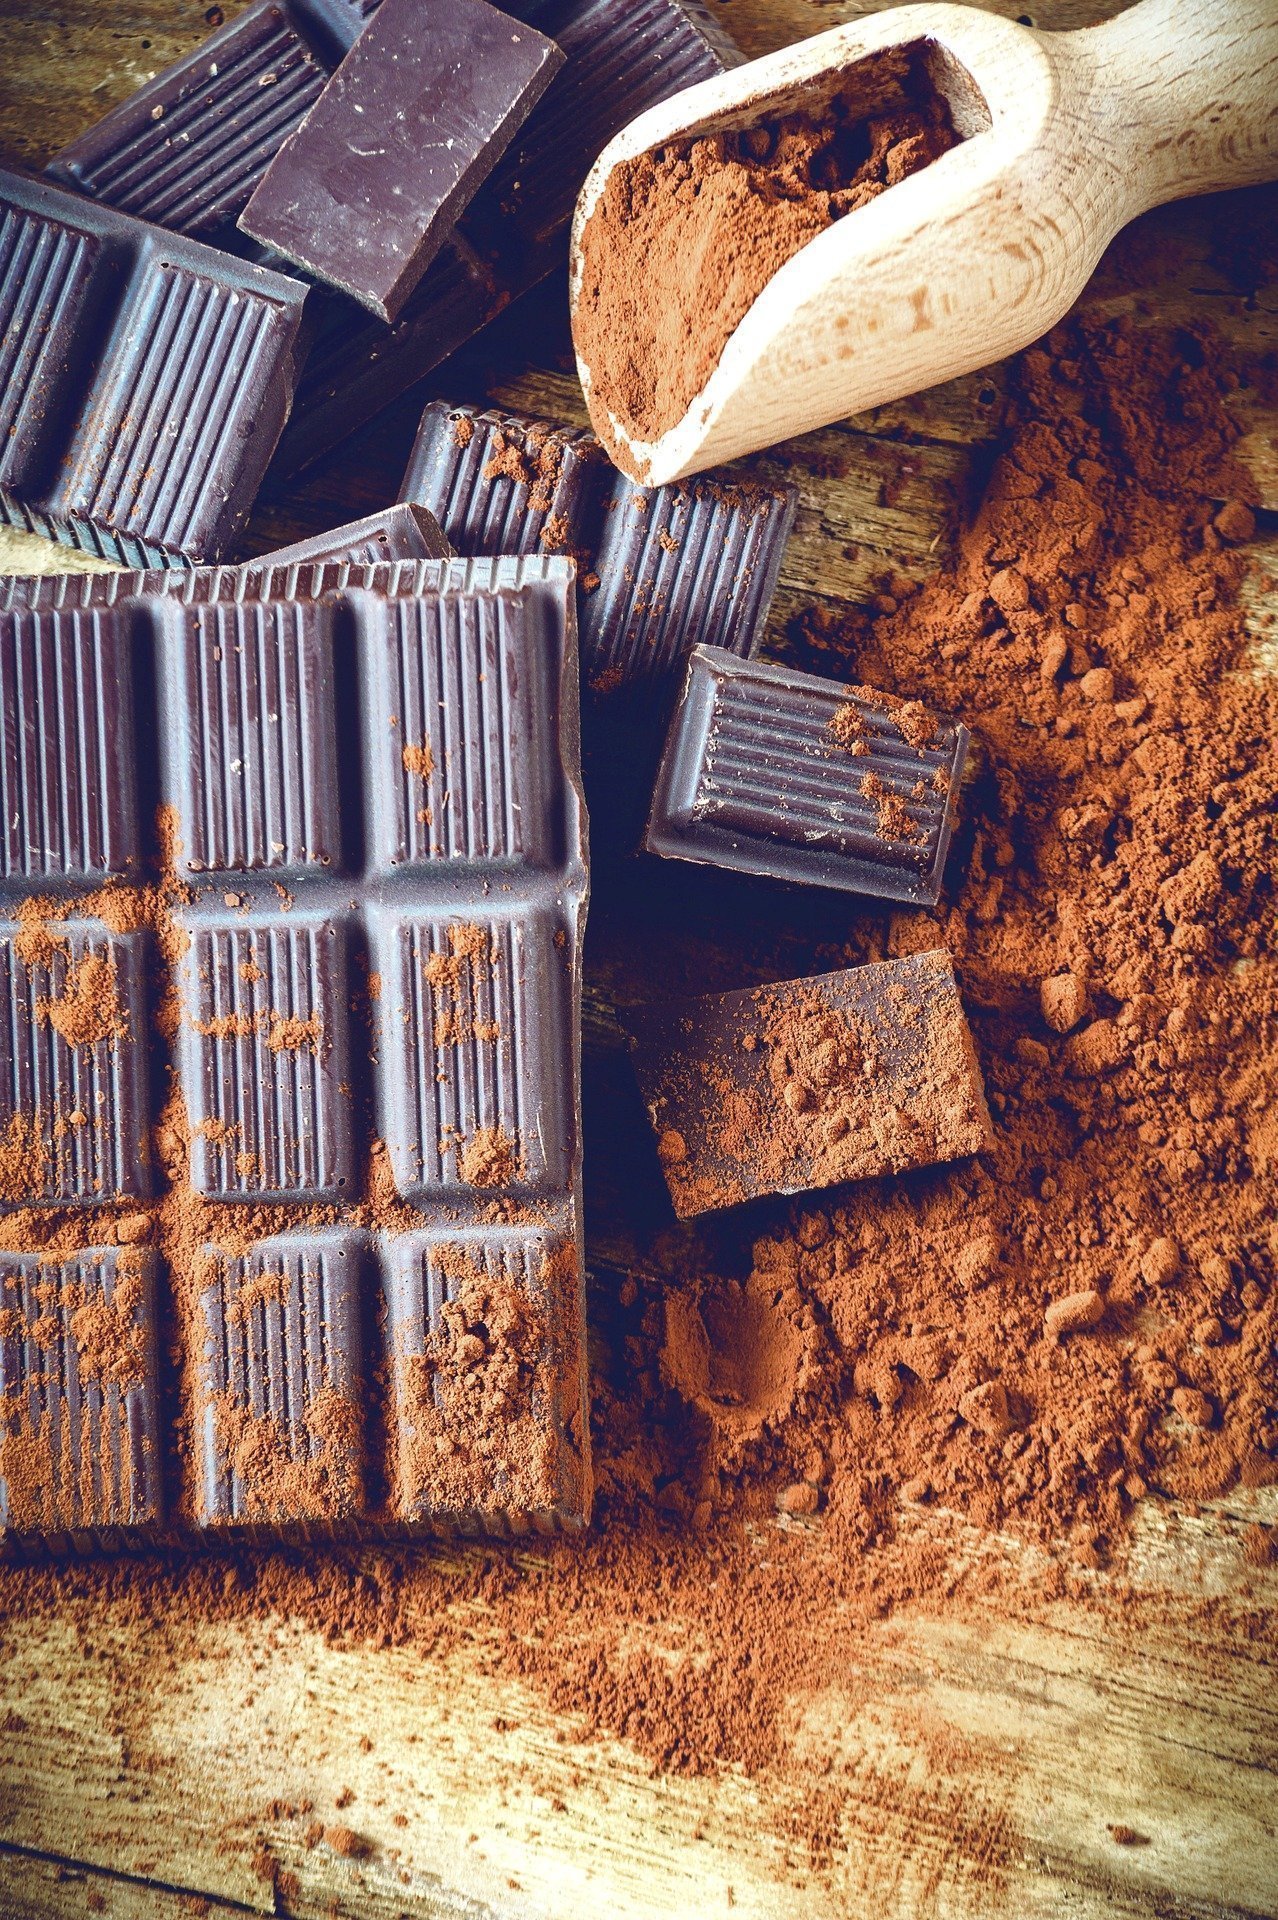 Šokoladas – vienas dažniausiai naudojamų ingredientų įvairiems konditeriniams gaminiams, pagamintas iš fermentuotų skrudintų maltų kakavos pupelių.„123rf.com“ asociatyvioji nuotr.